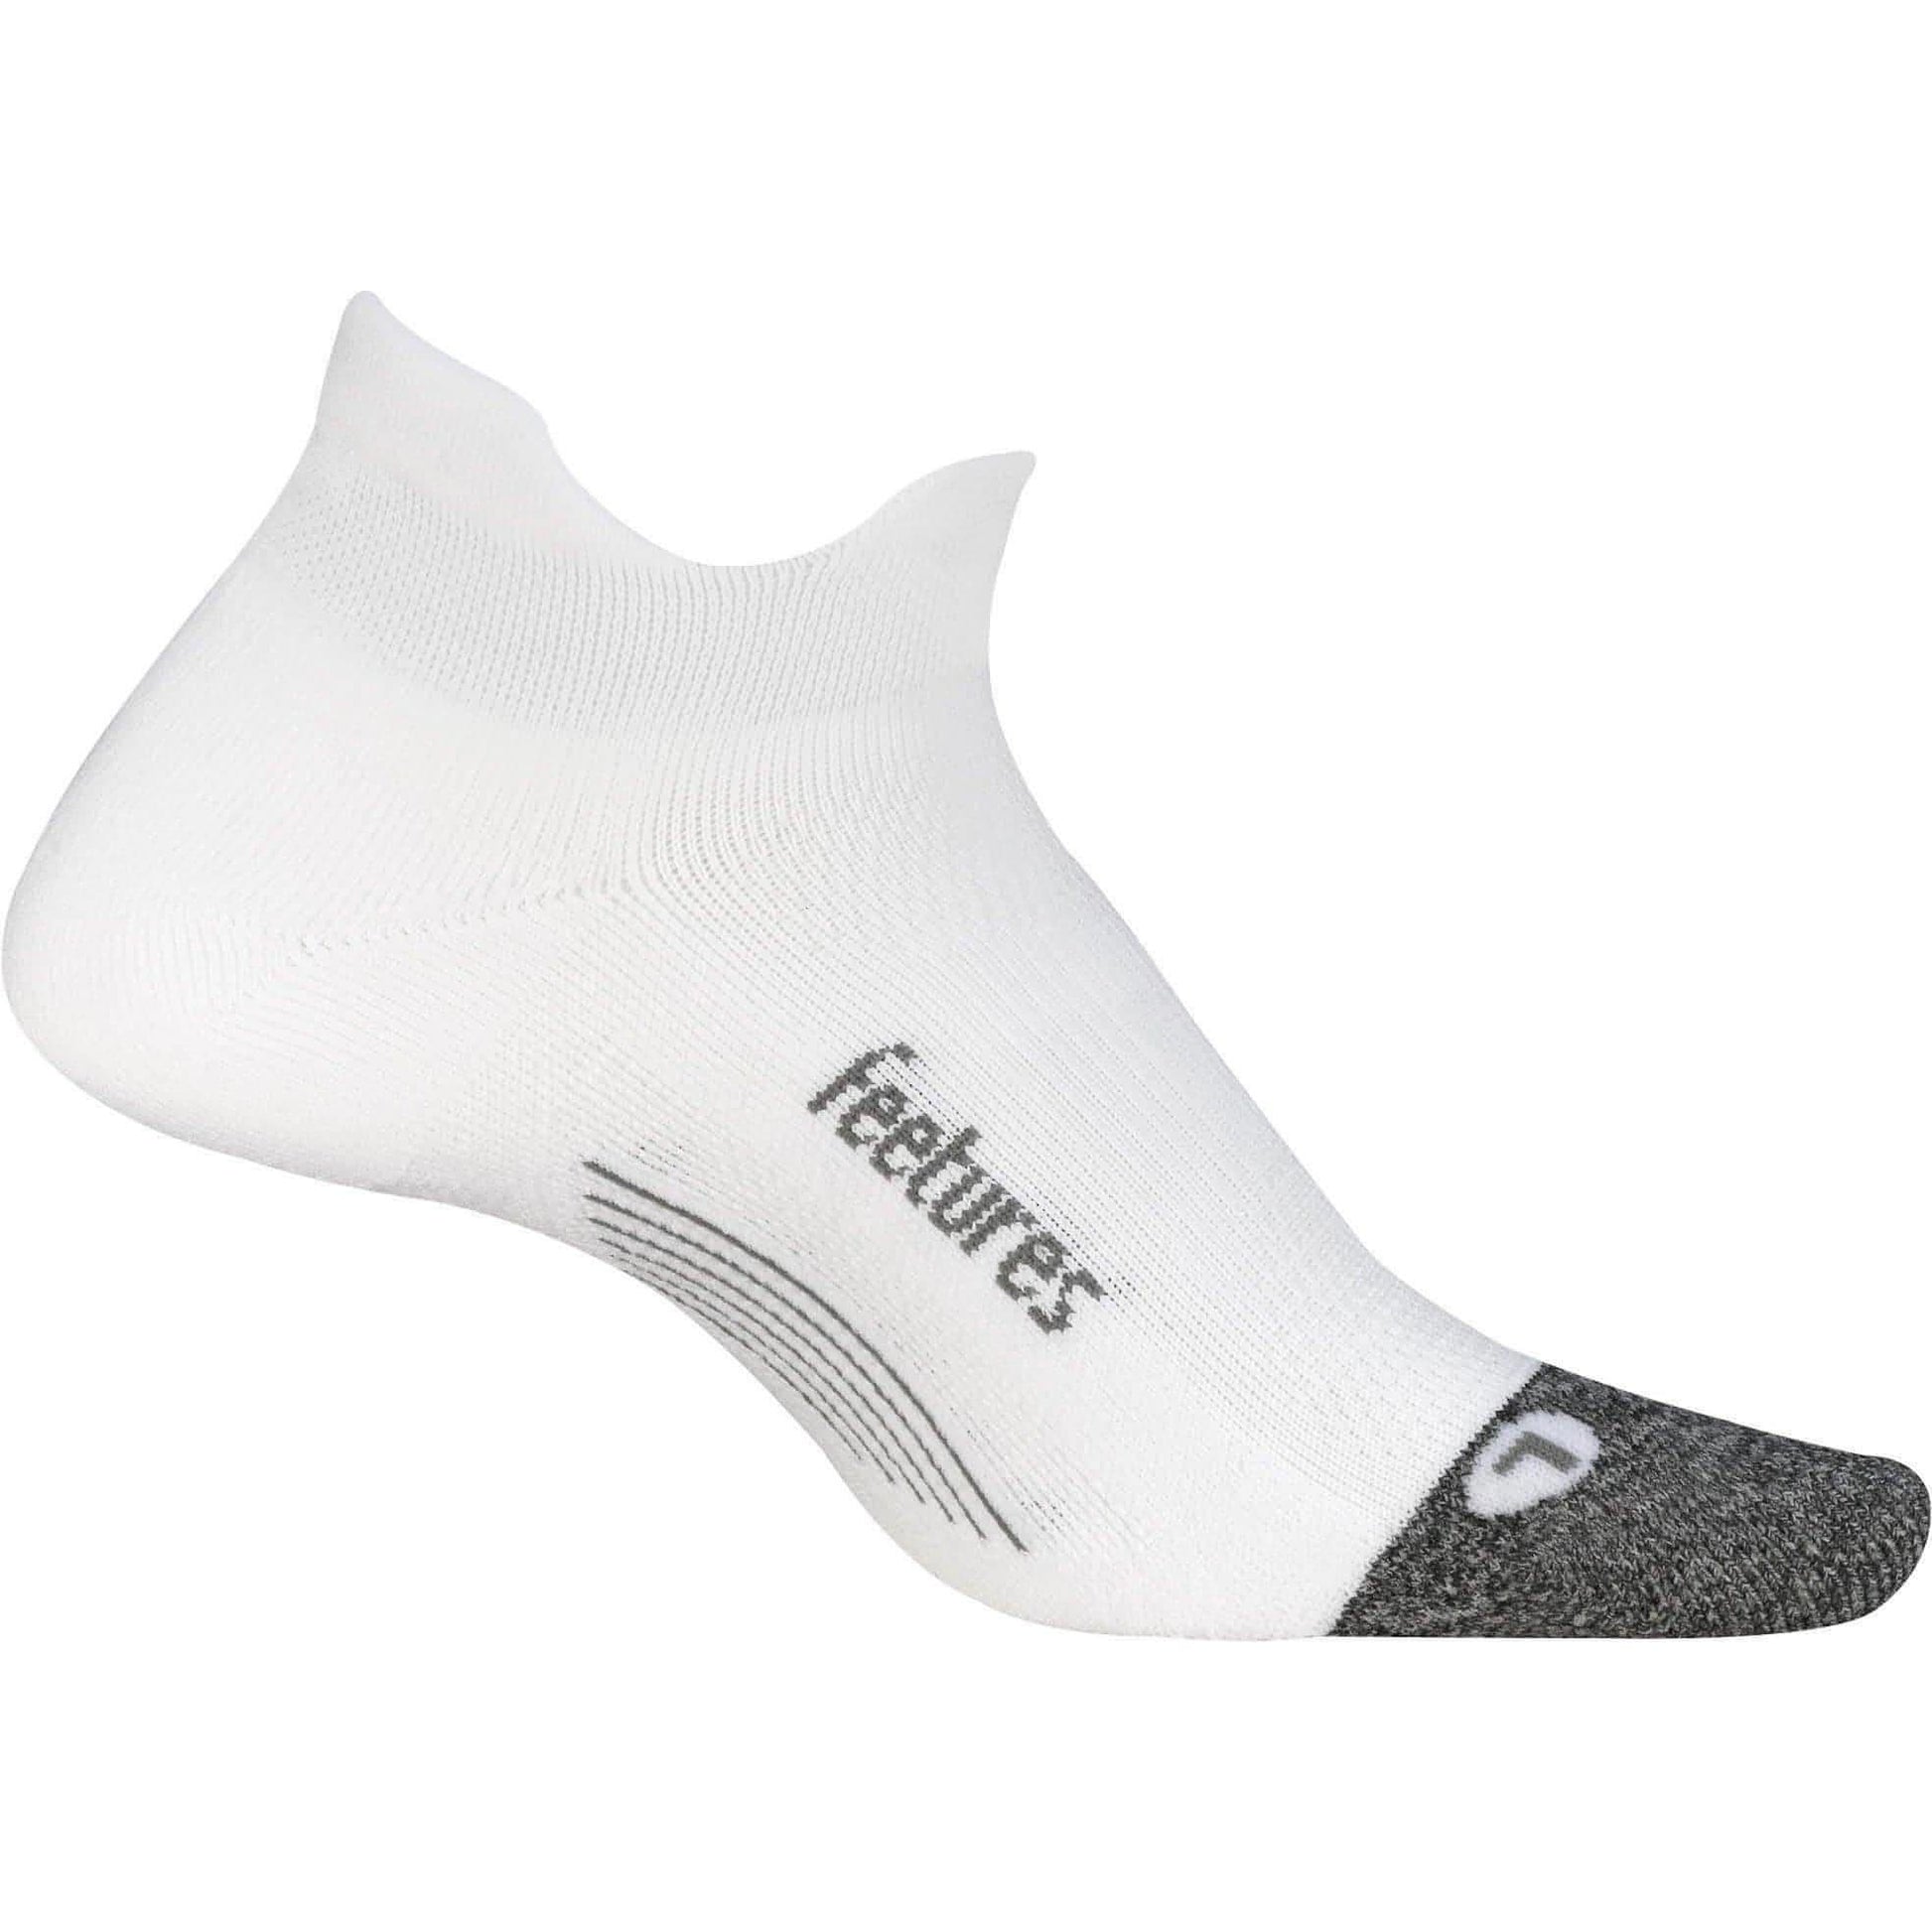 Feetures Elite Light Cushioning No Show Tab Running Socks - White 840557121748 - Start Fitness